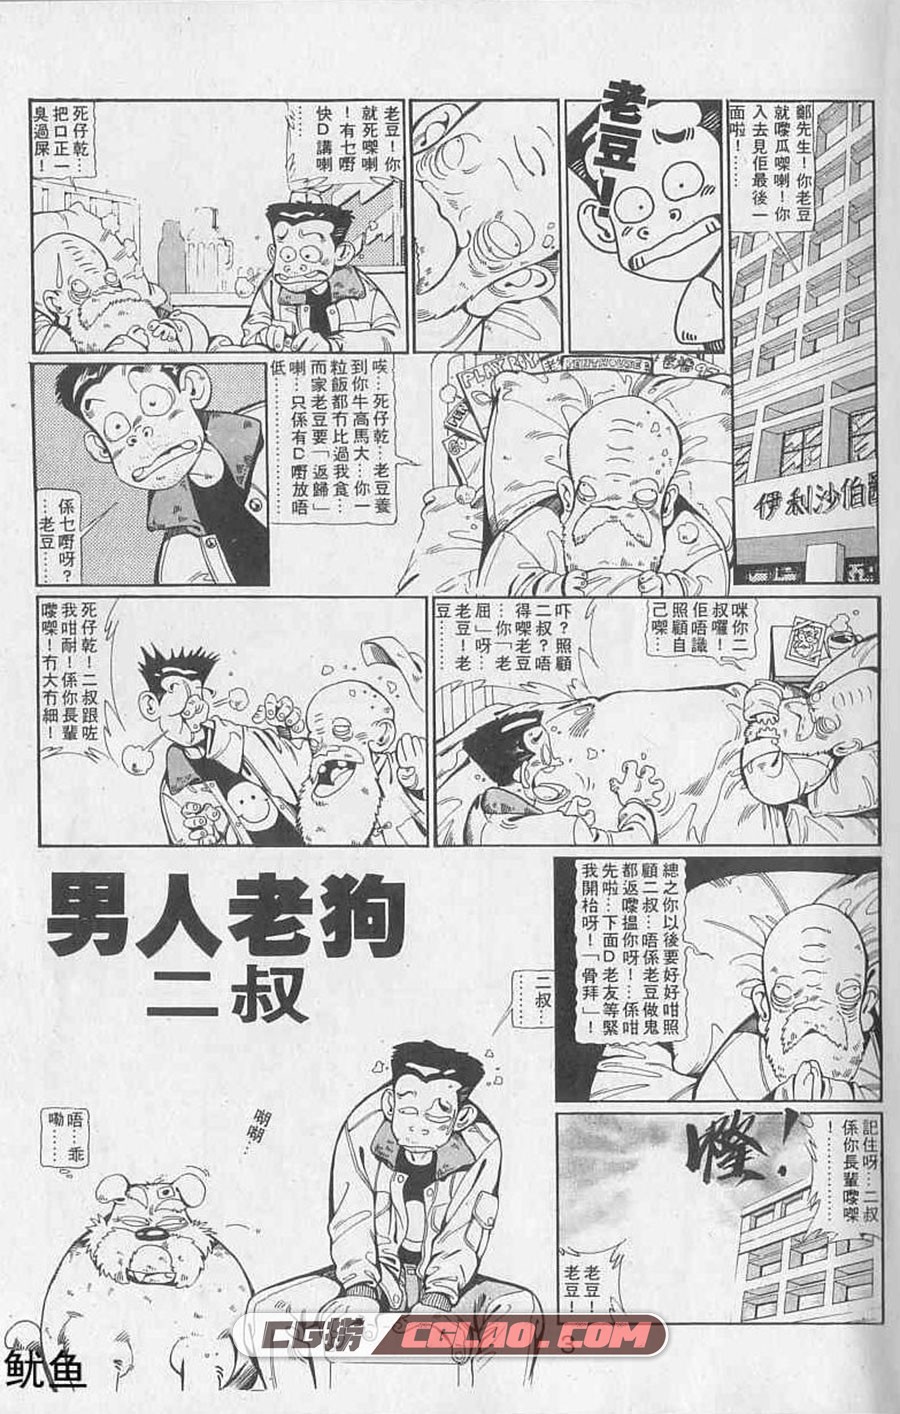 男人老狗 许景琛 全一册 香港卡通漫画全集下载,02.jpg